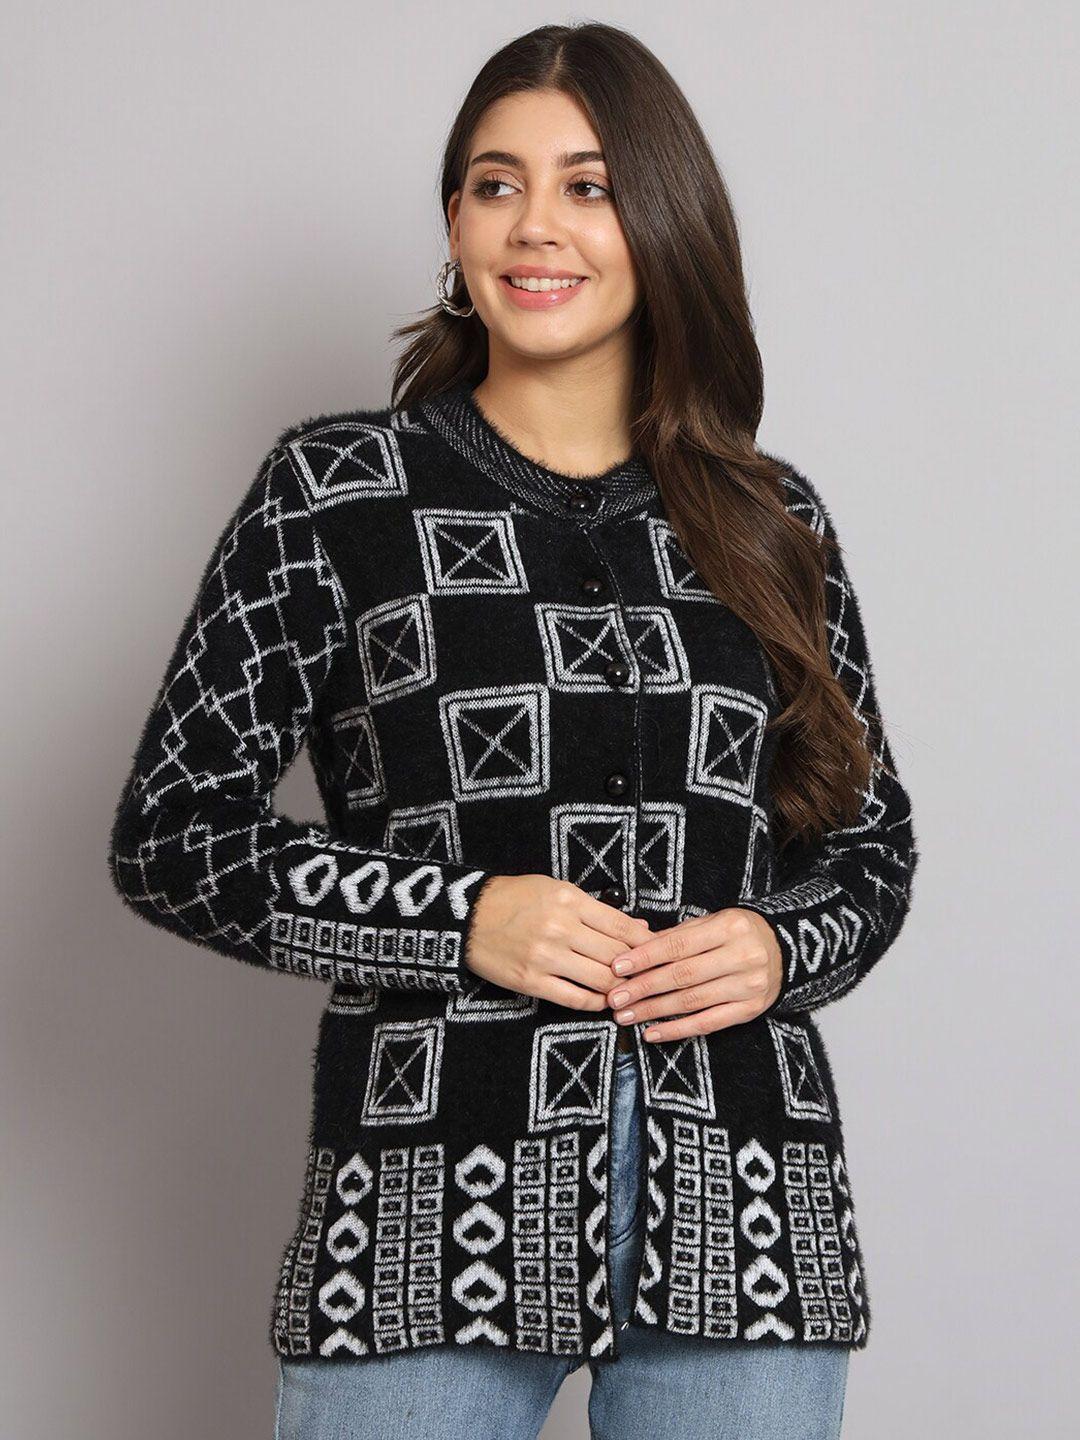 ewools geometric printed cardigan sweater